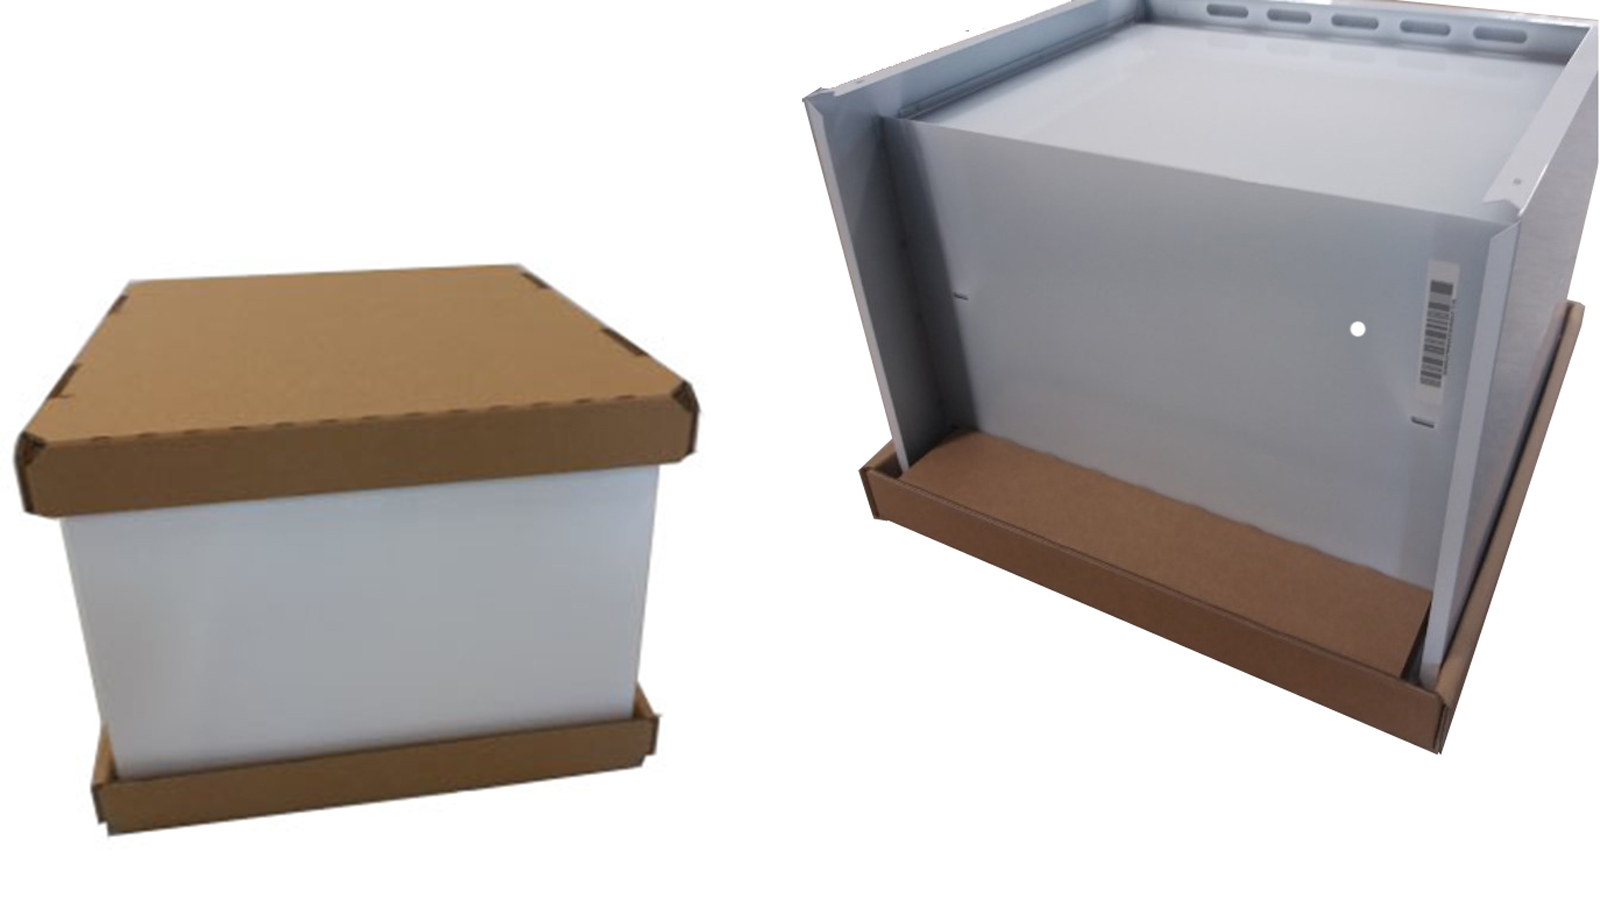 Förpackning i wellpapp, för överskåp till kylskåp och frysar, ersätter tidigare plastförpackning.